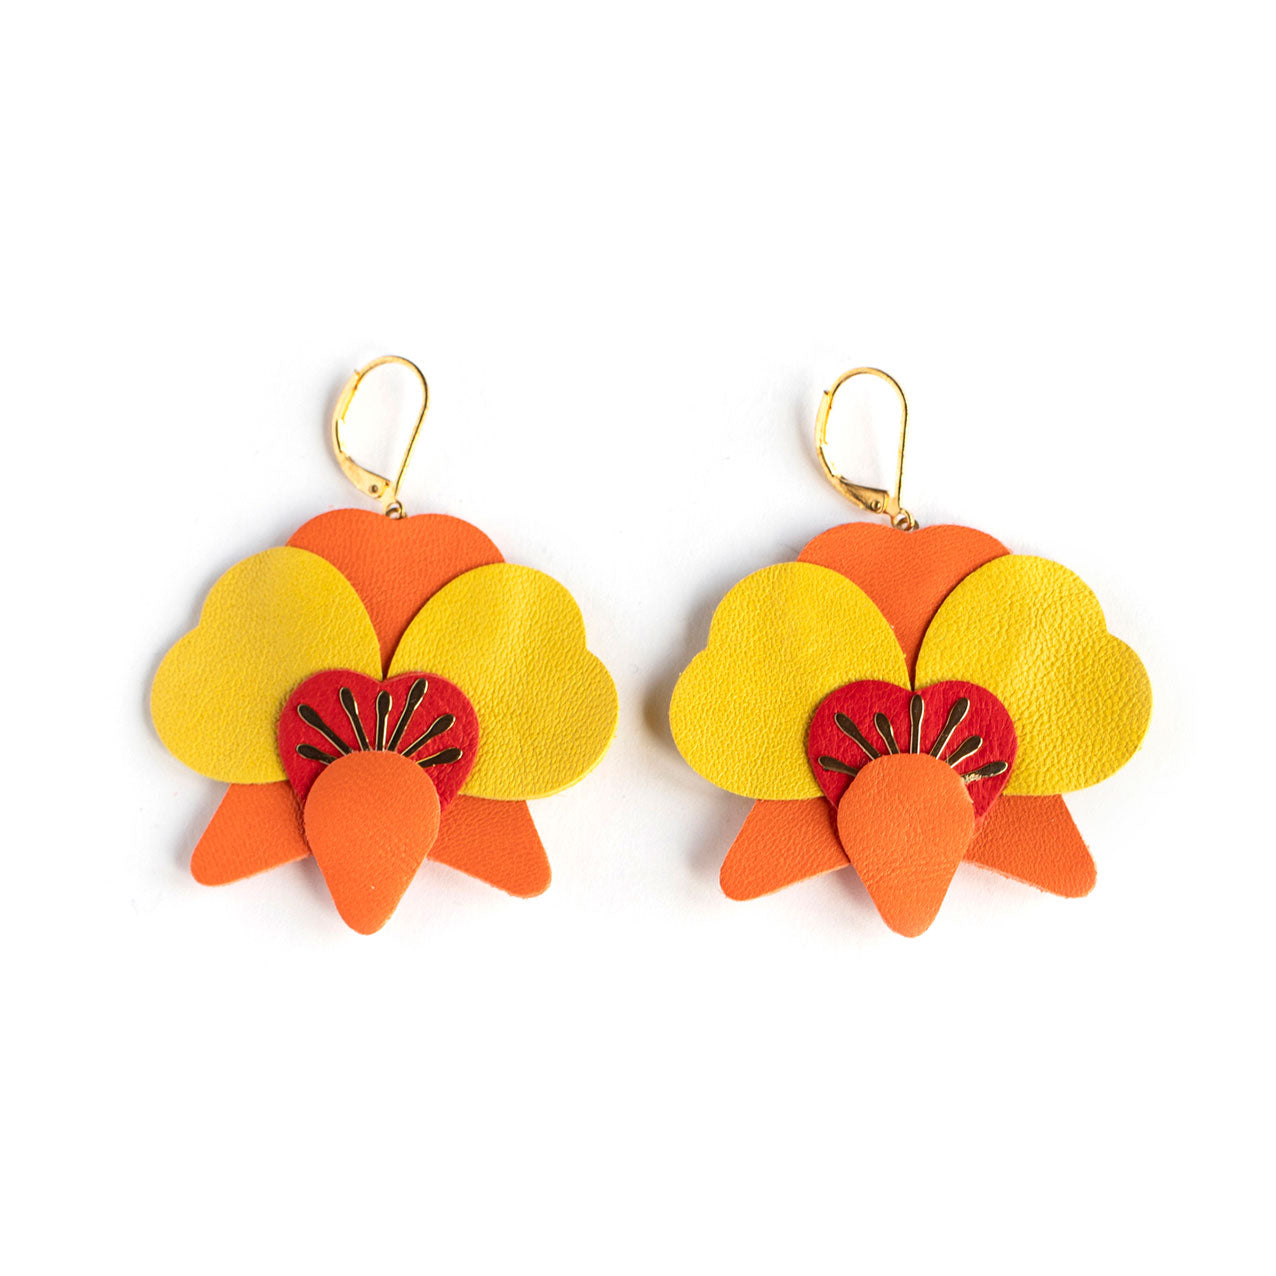 Boucles d’oreilles Orchidées - orange, rouge et jaune